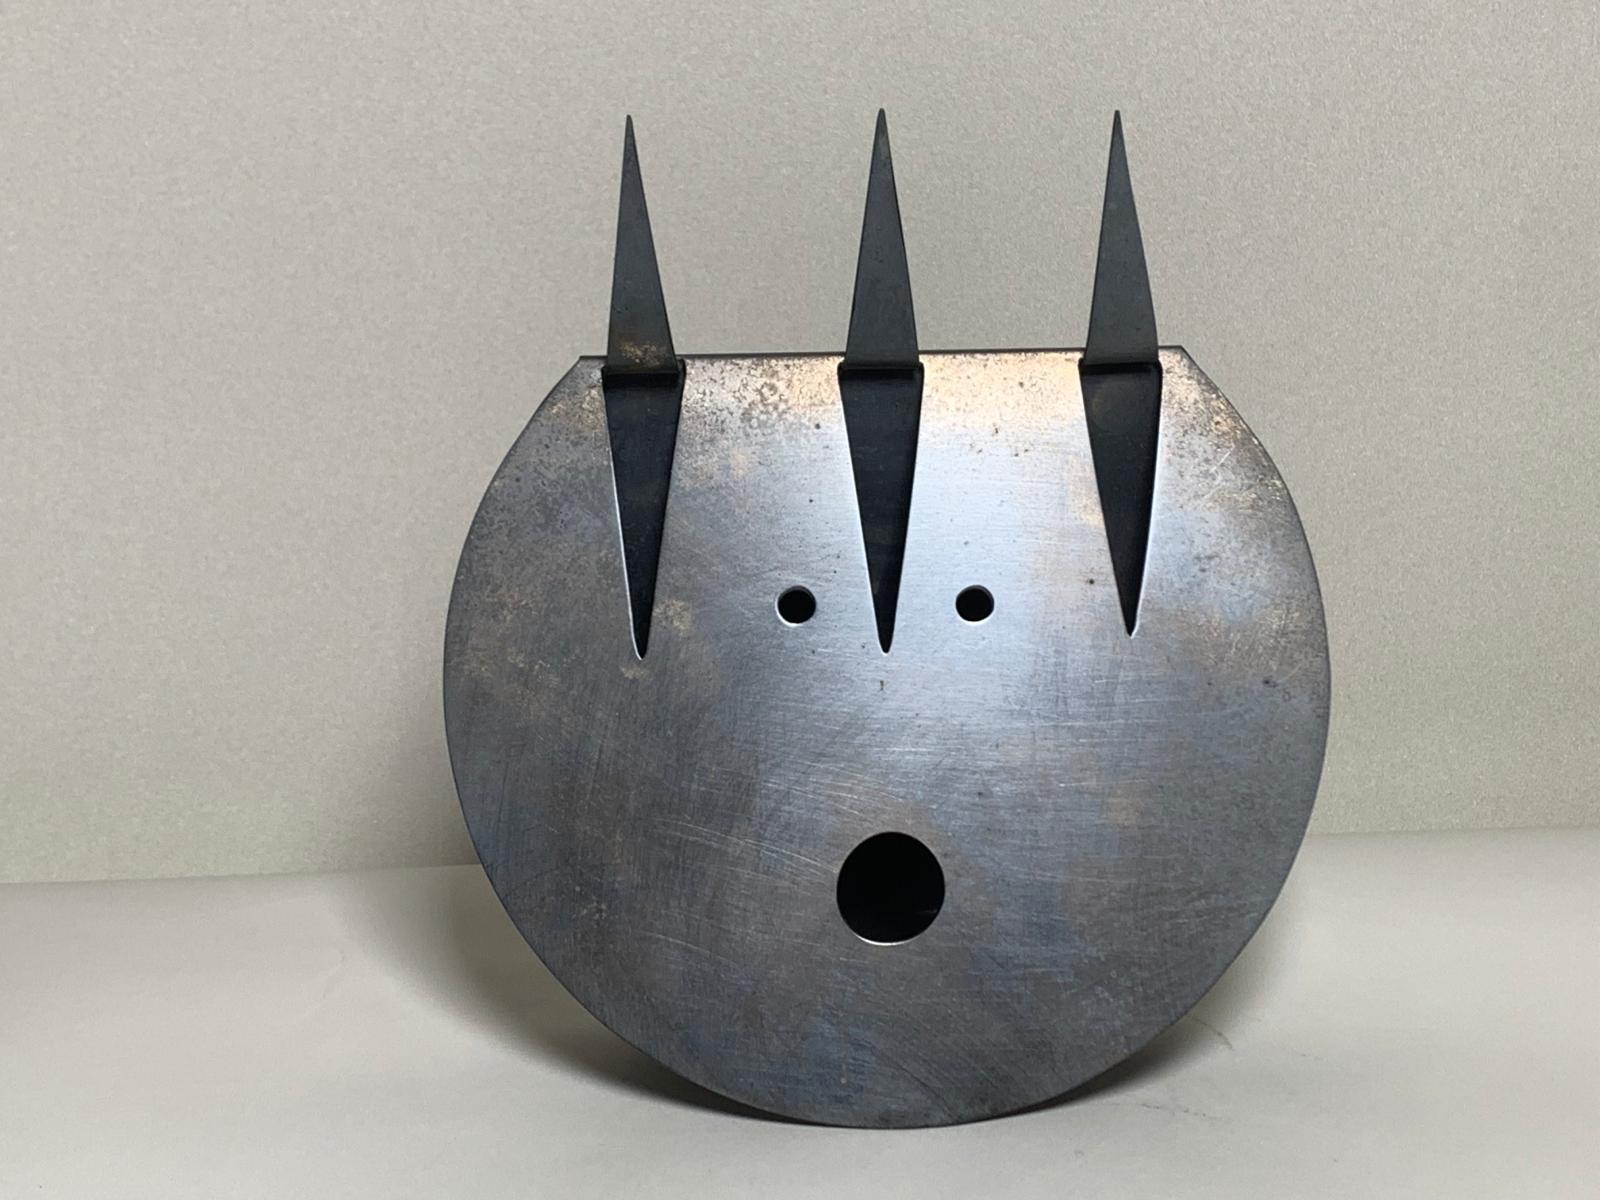 Sculpture représentant le diable conçue par Gio Ponti et réalisée par Lino Sabattini en 1978 en métal argenté poinçonné.

Biographie
Architecte, designer et artiste, Gio Ponti (Milan 1891-1979) a obtenu son diplôme à Milan en 1921 et s'est d'abord